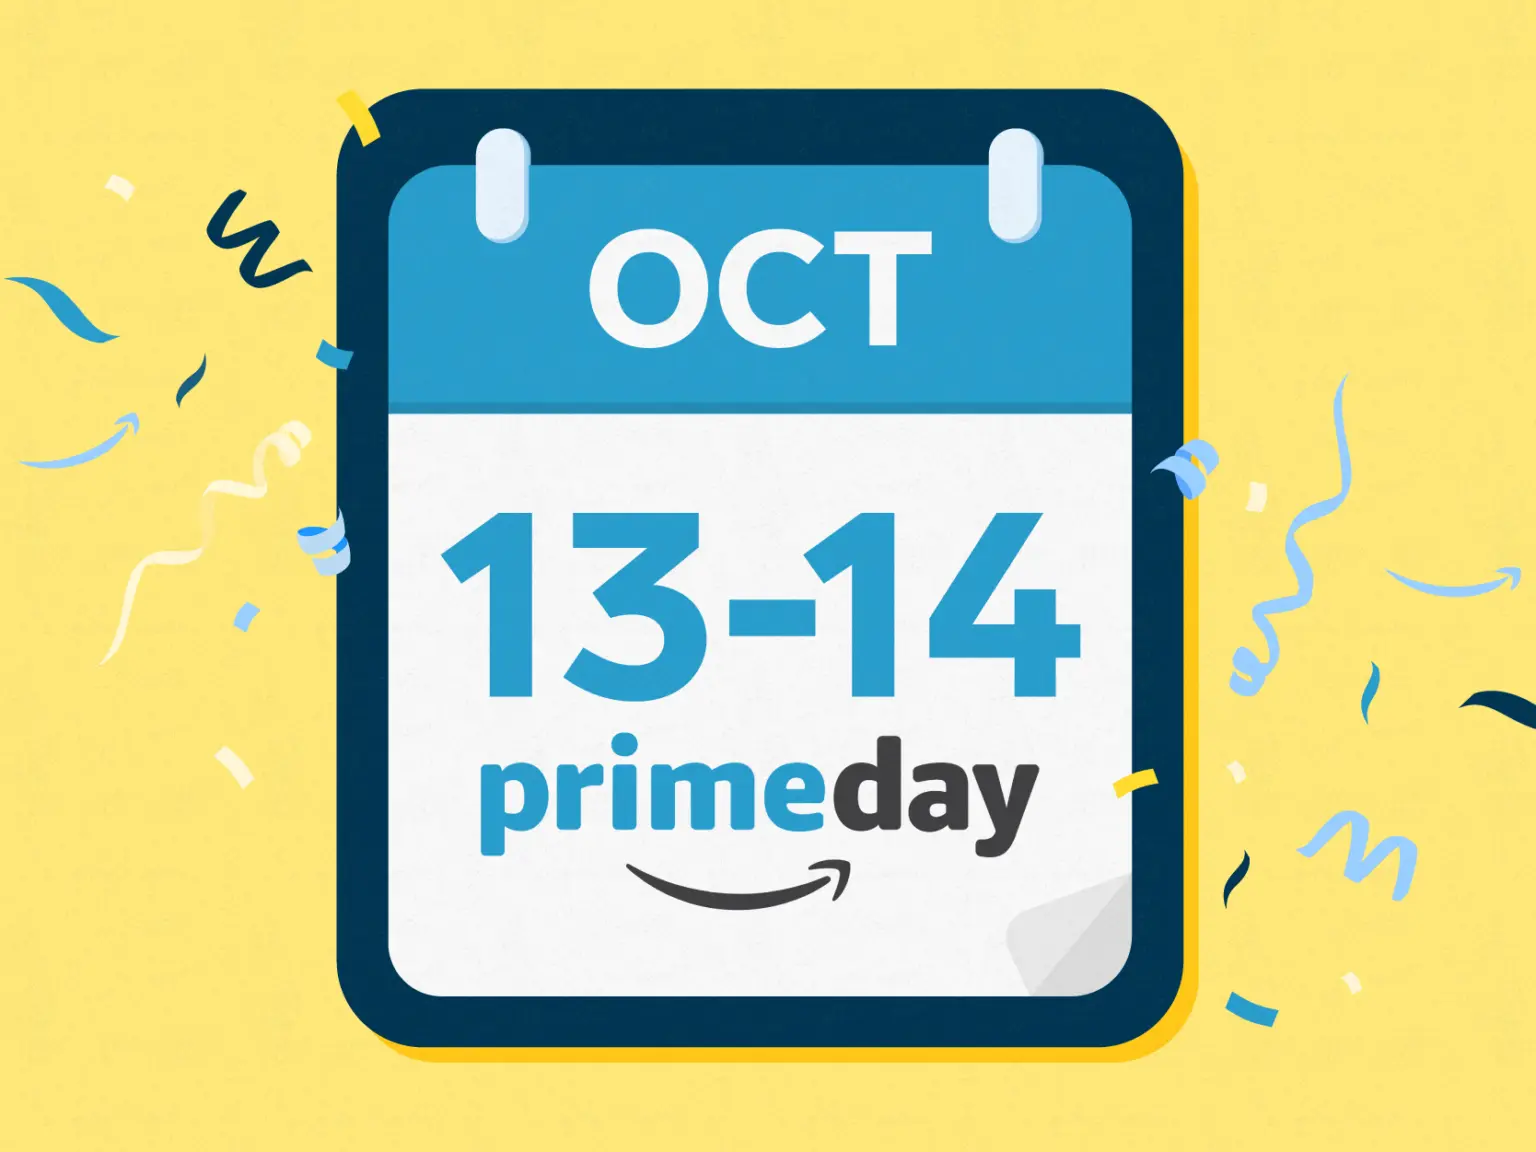 أمازون تعلن رسميًا عن موعد حدث التسوق المرتقب Prime Day